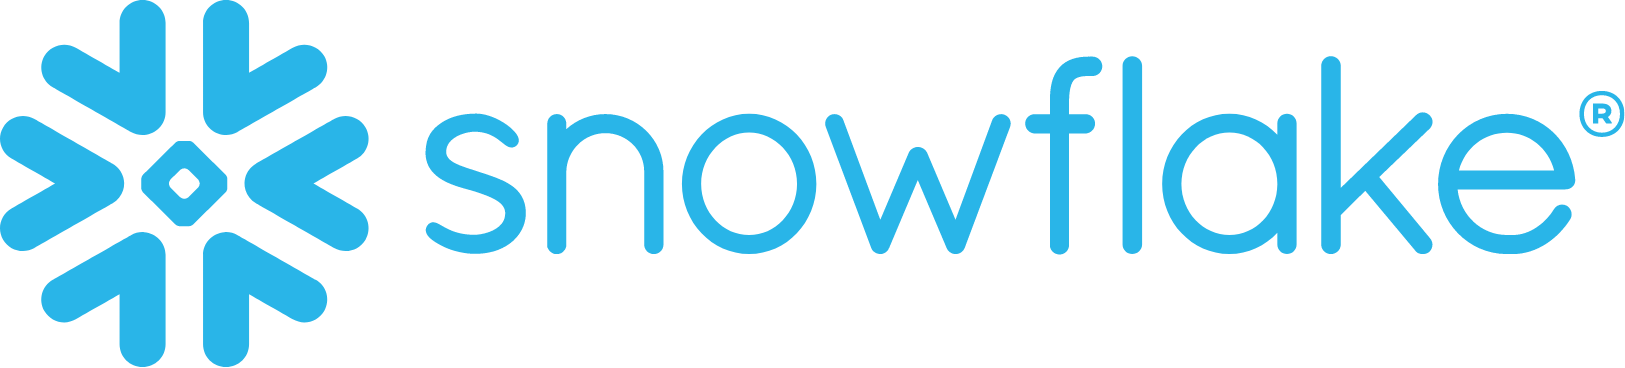 Snowflake logo large (transparent PNG)